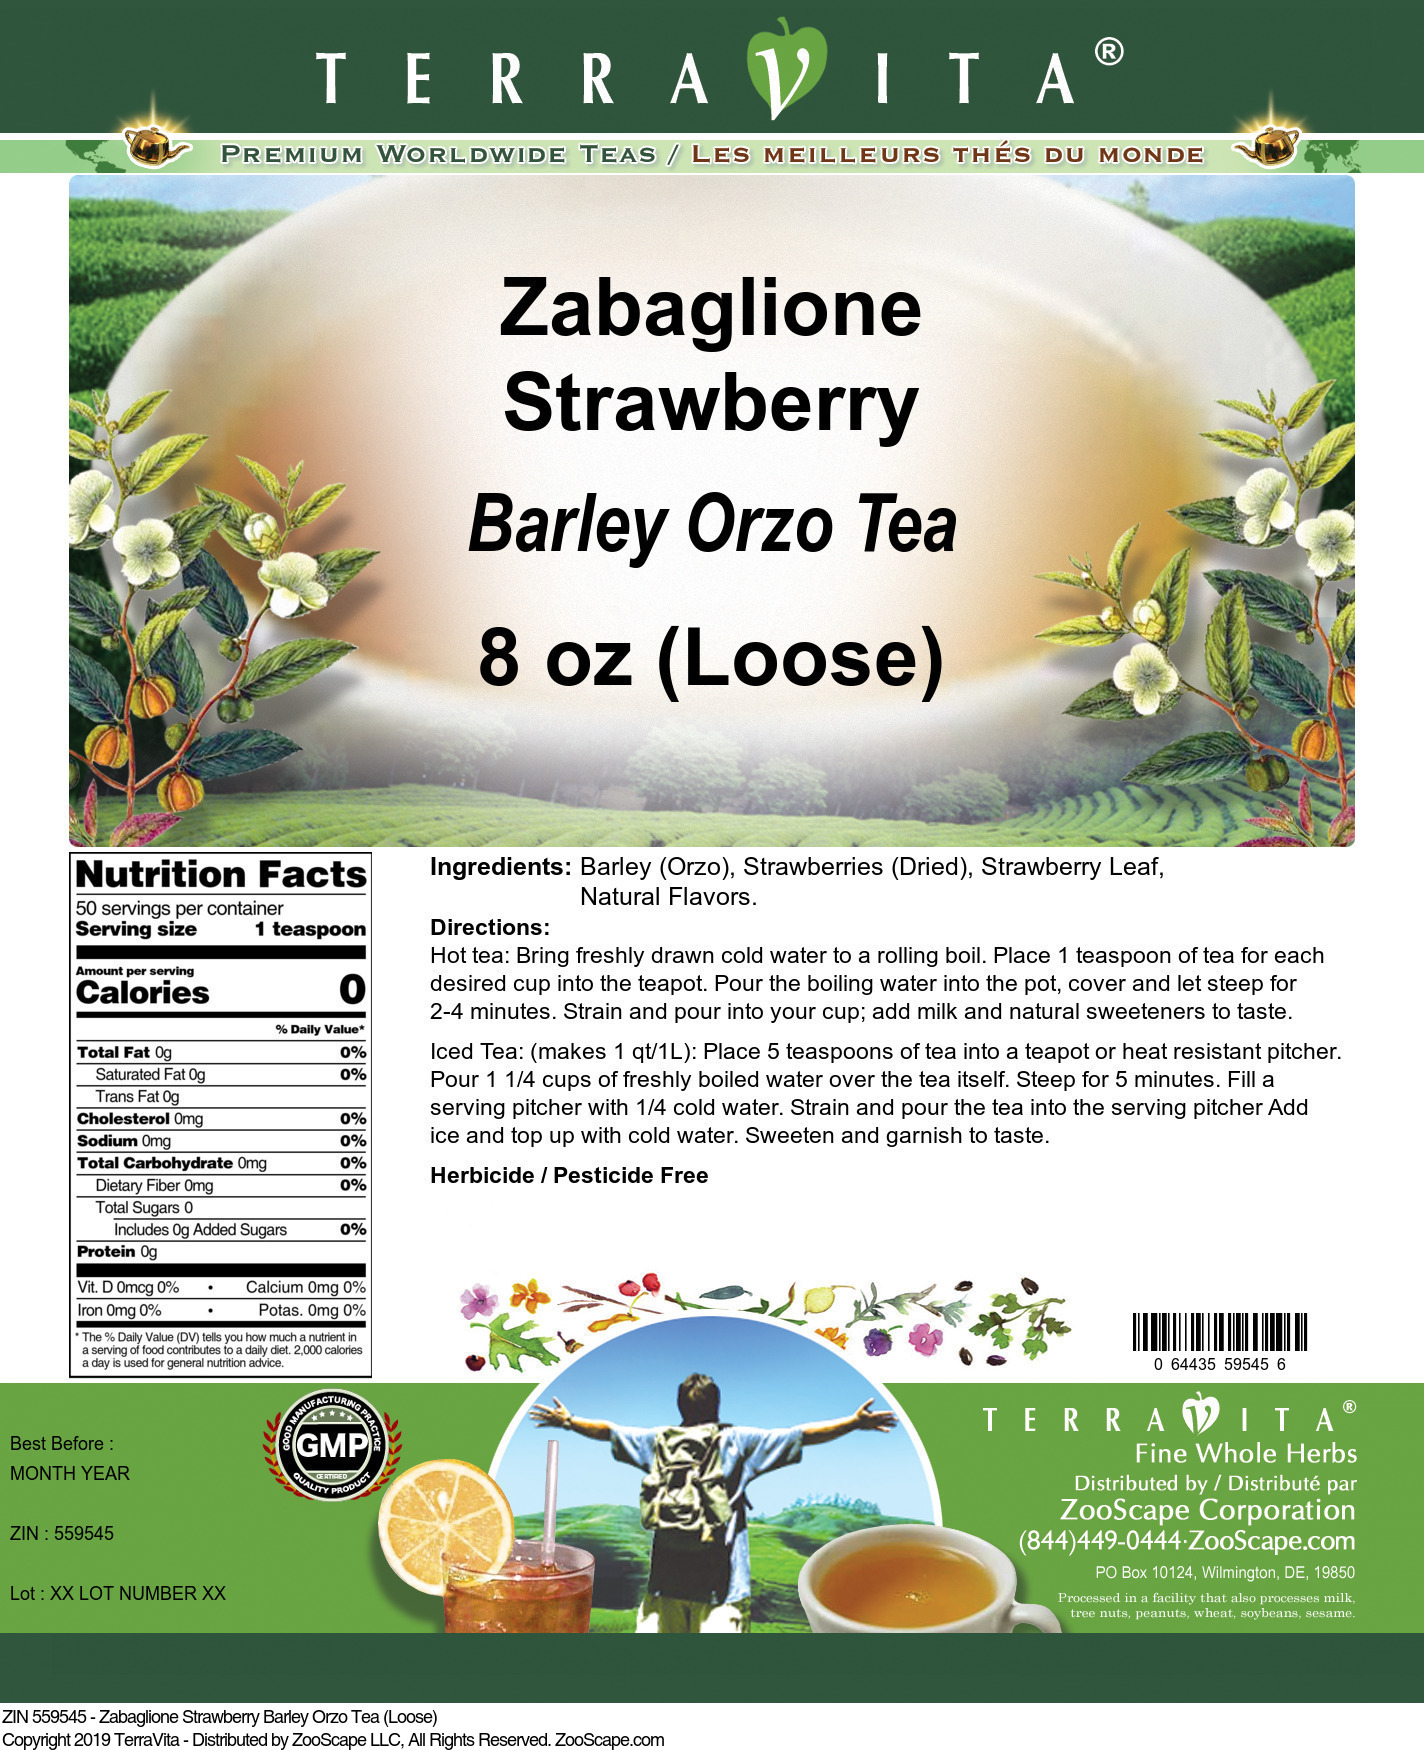 Zabaglione Strawberry Barley Orzo Tea (Loose) - Label